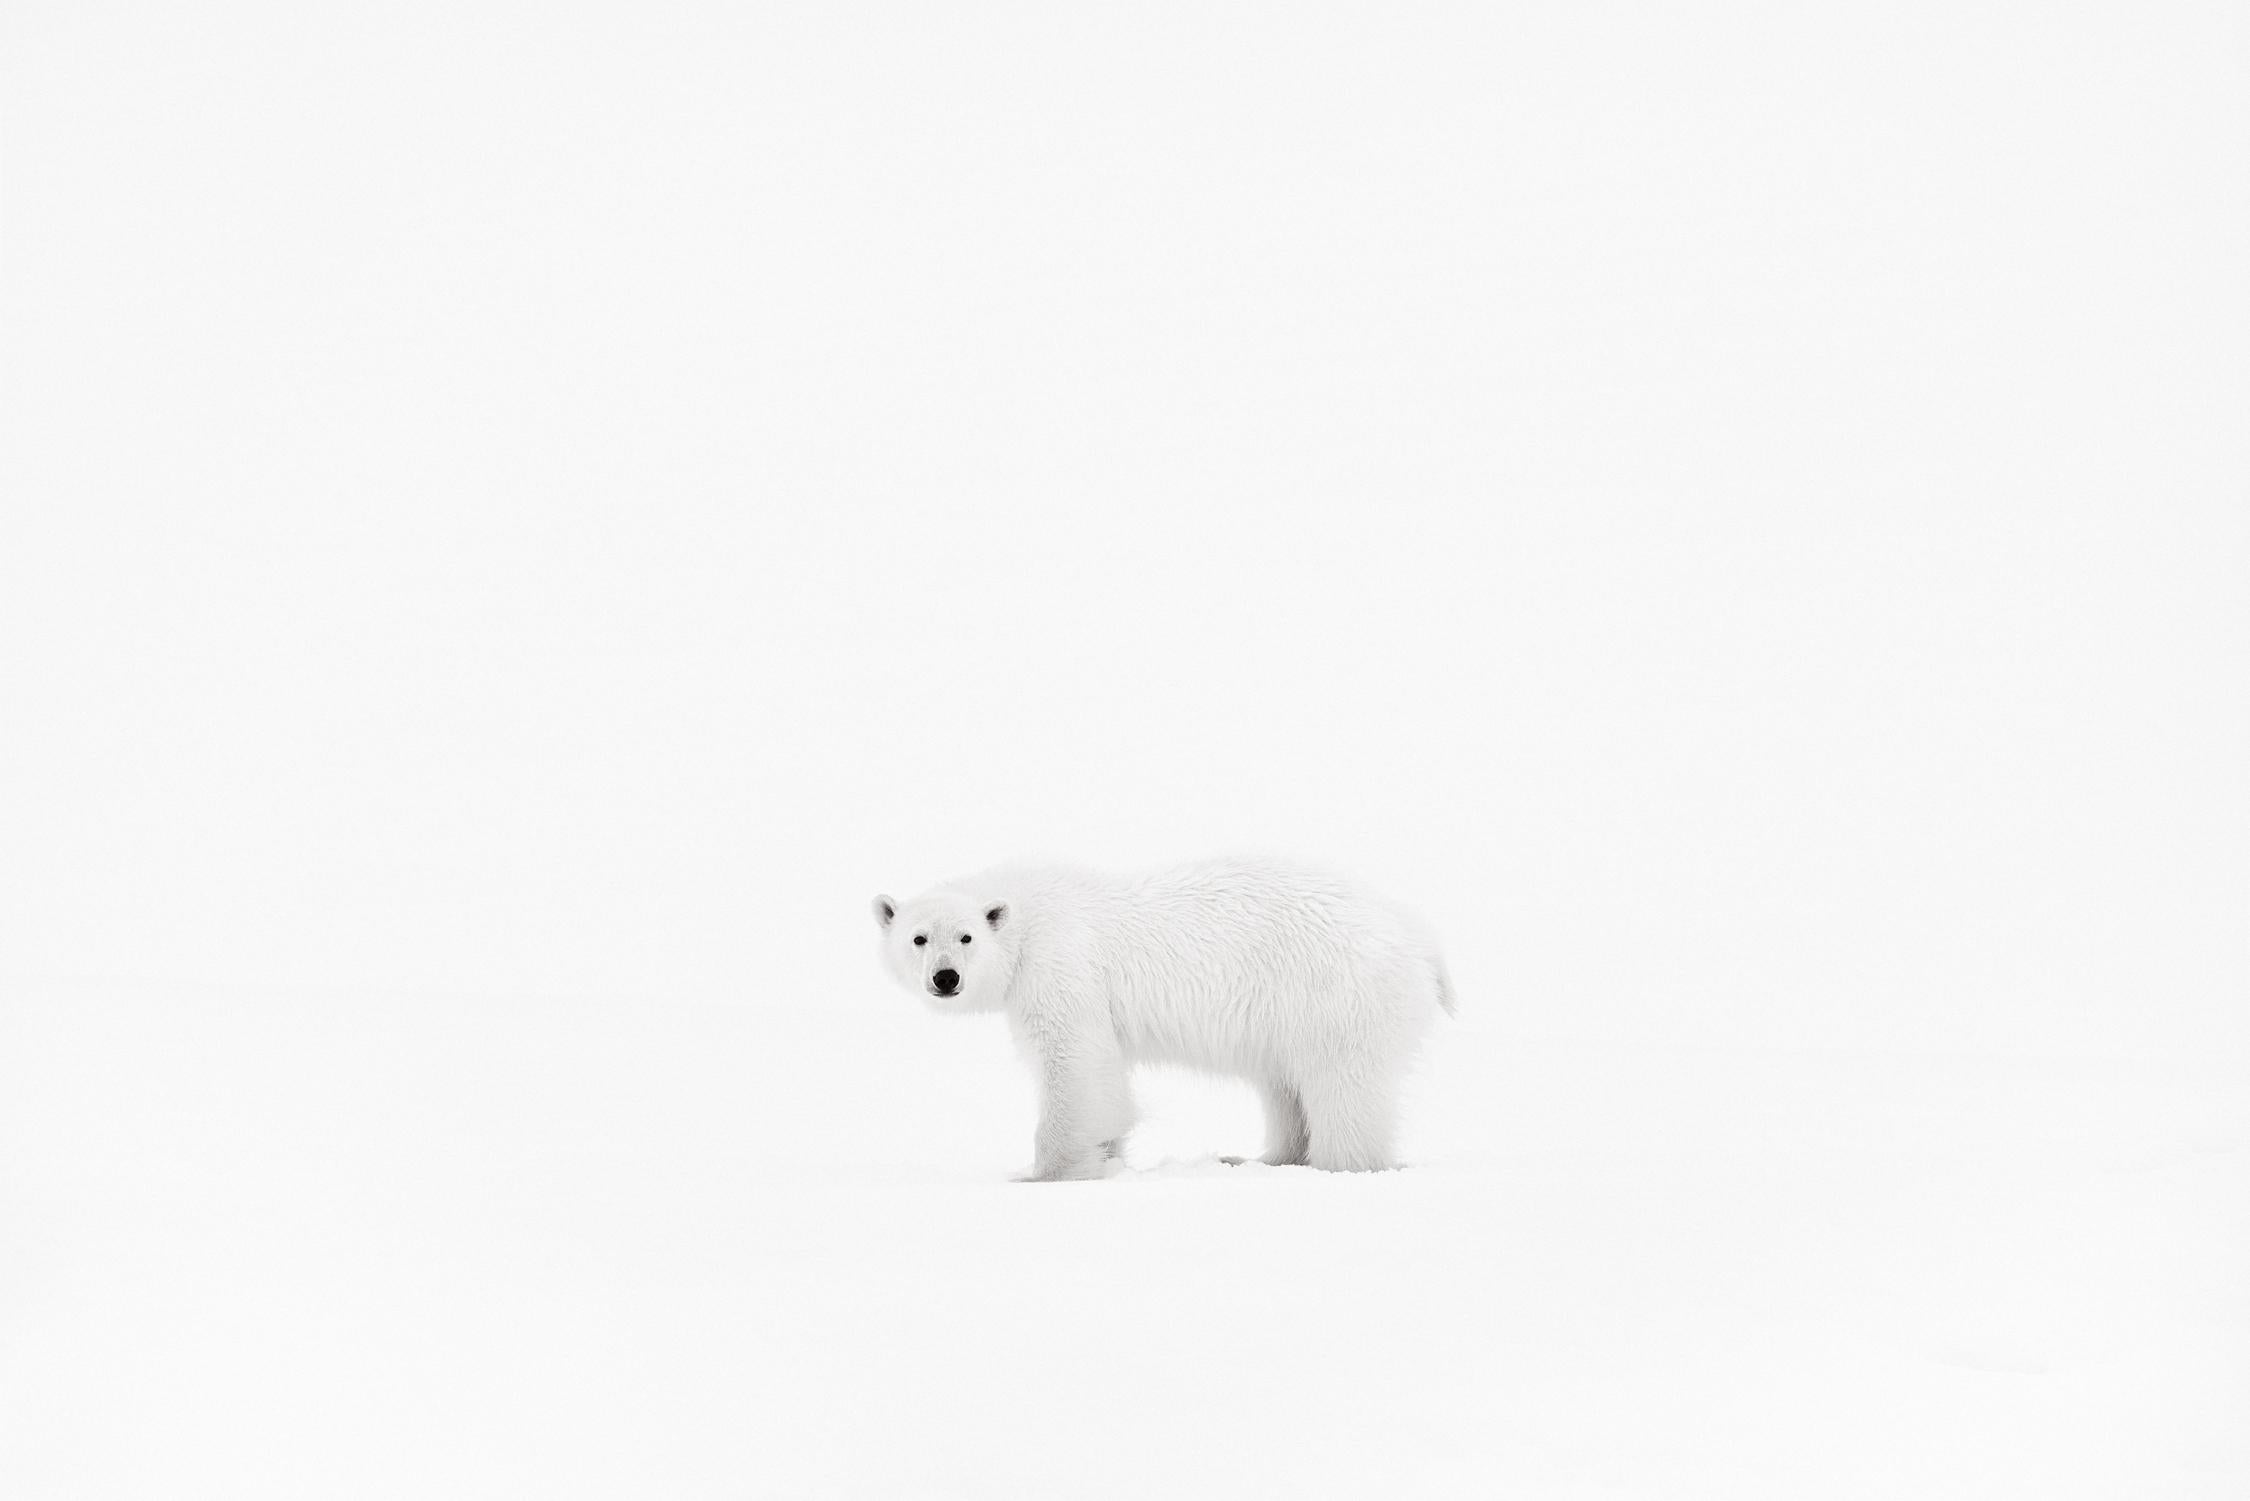 Black and White Photograph Drew Doggett - Ours polaire avec un arrière-plan minimal, faune et flore, photographie en noir et blanc